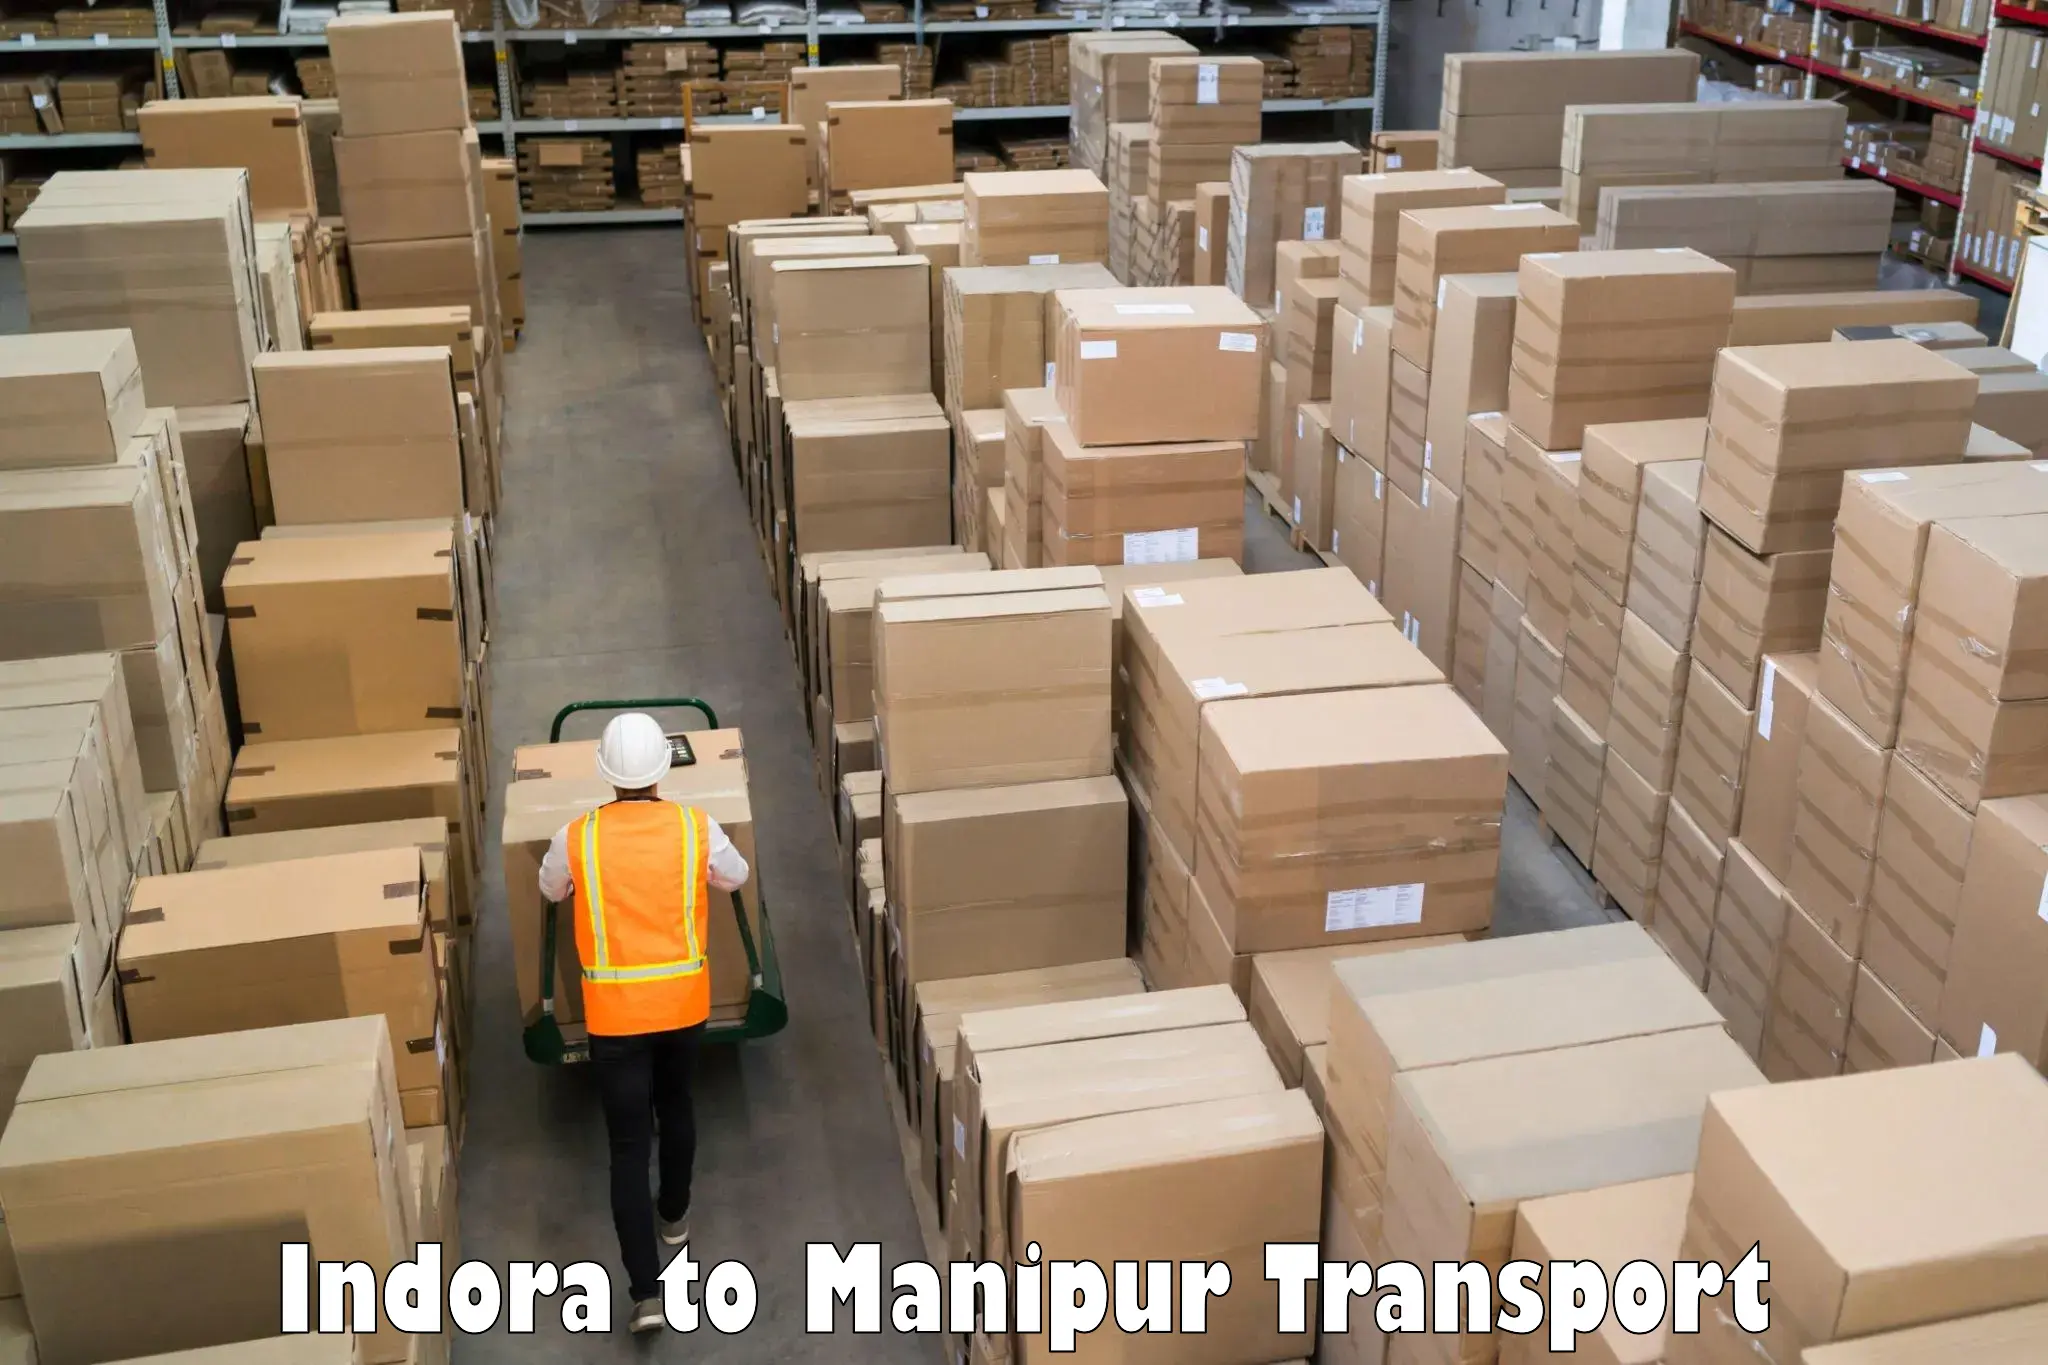 Nationwide transport services Indora to Churachandpur